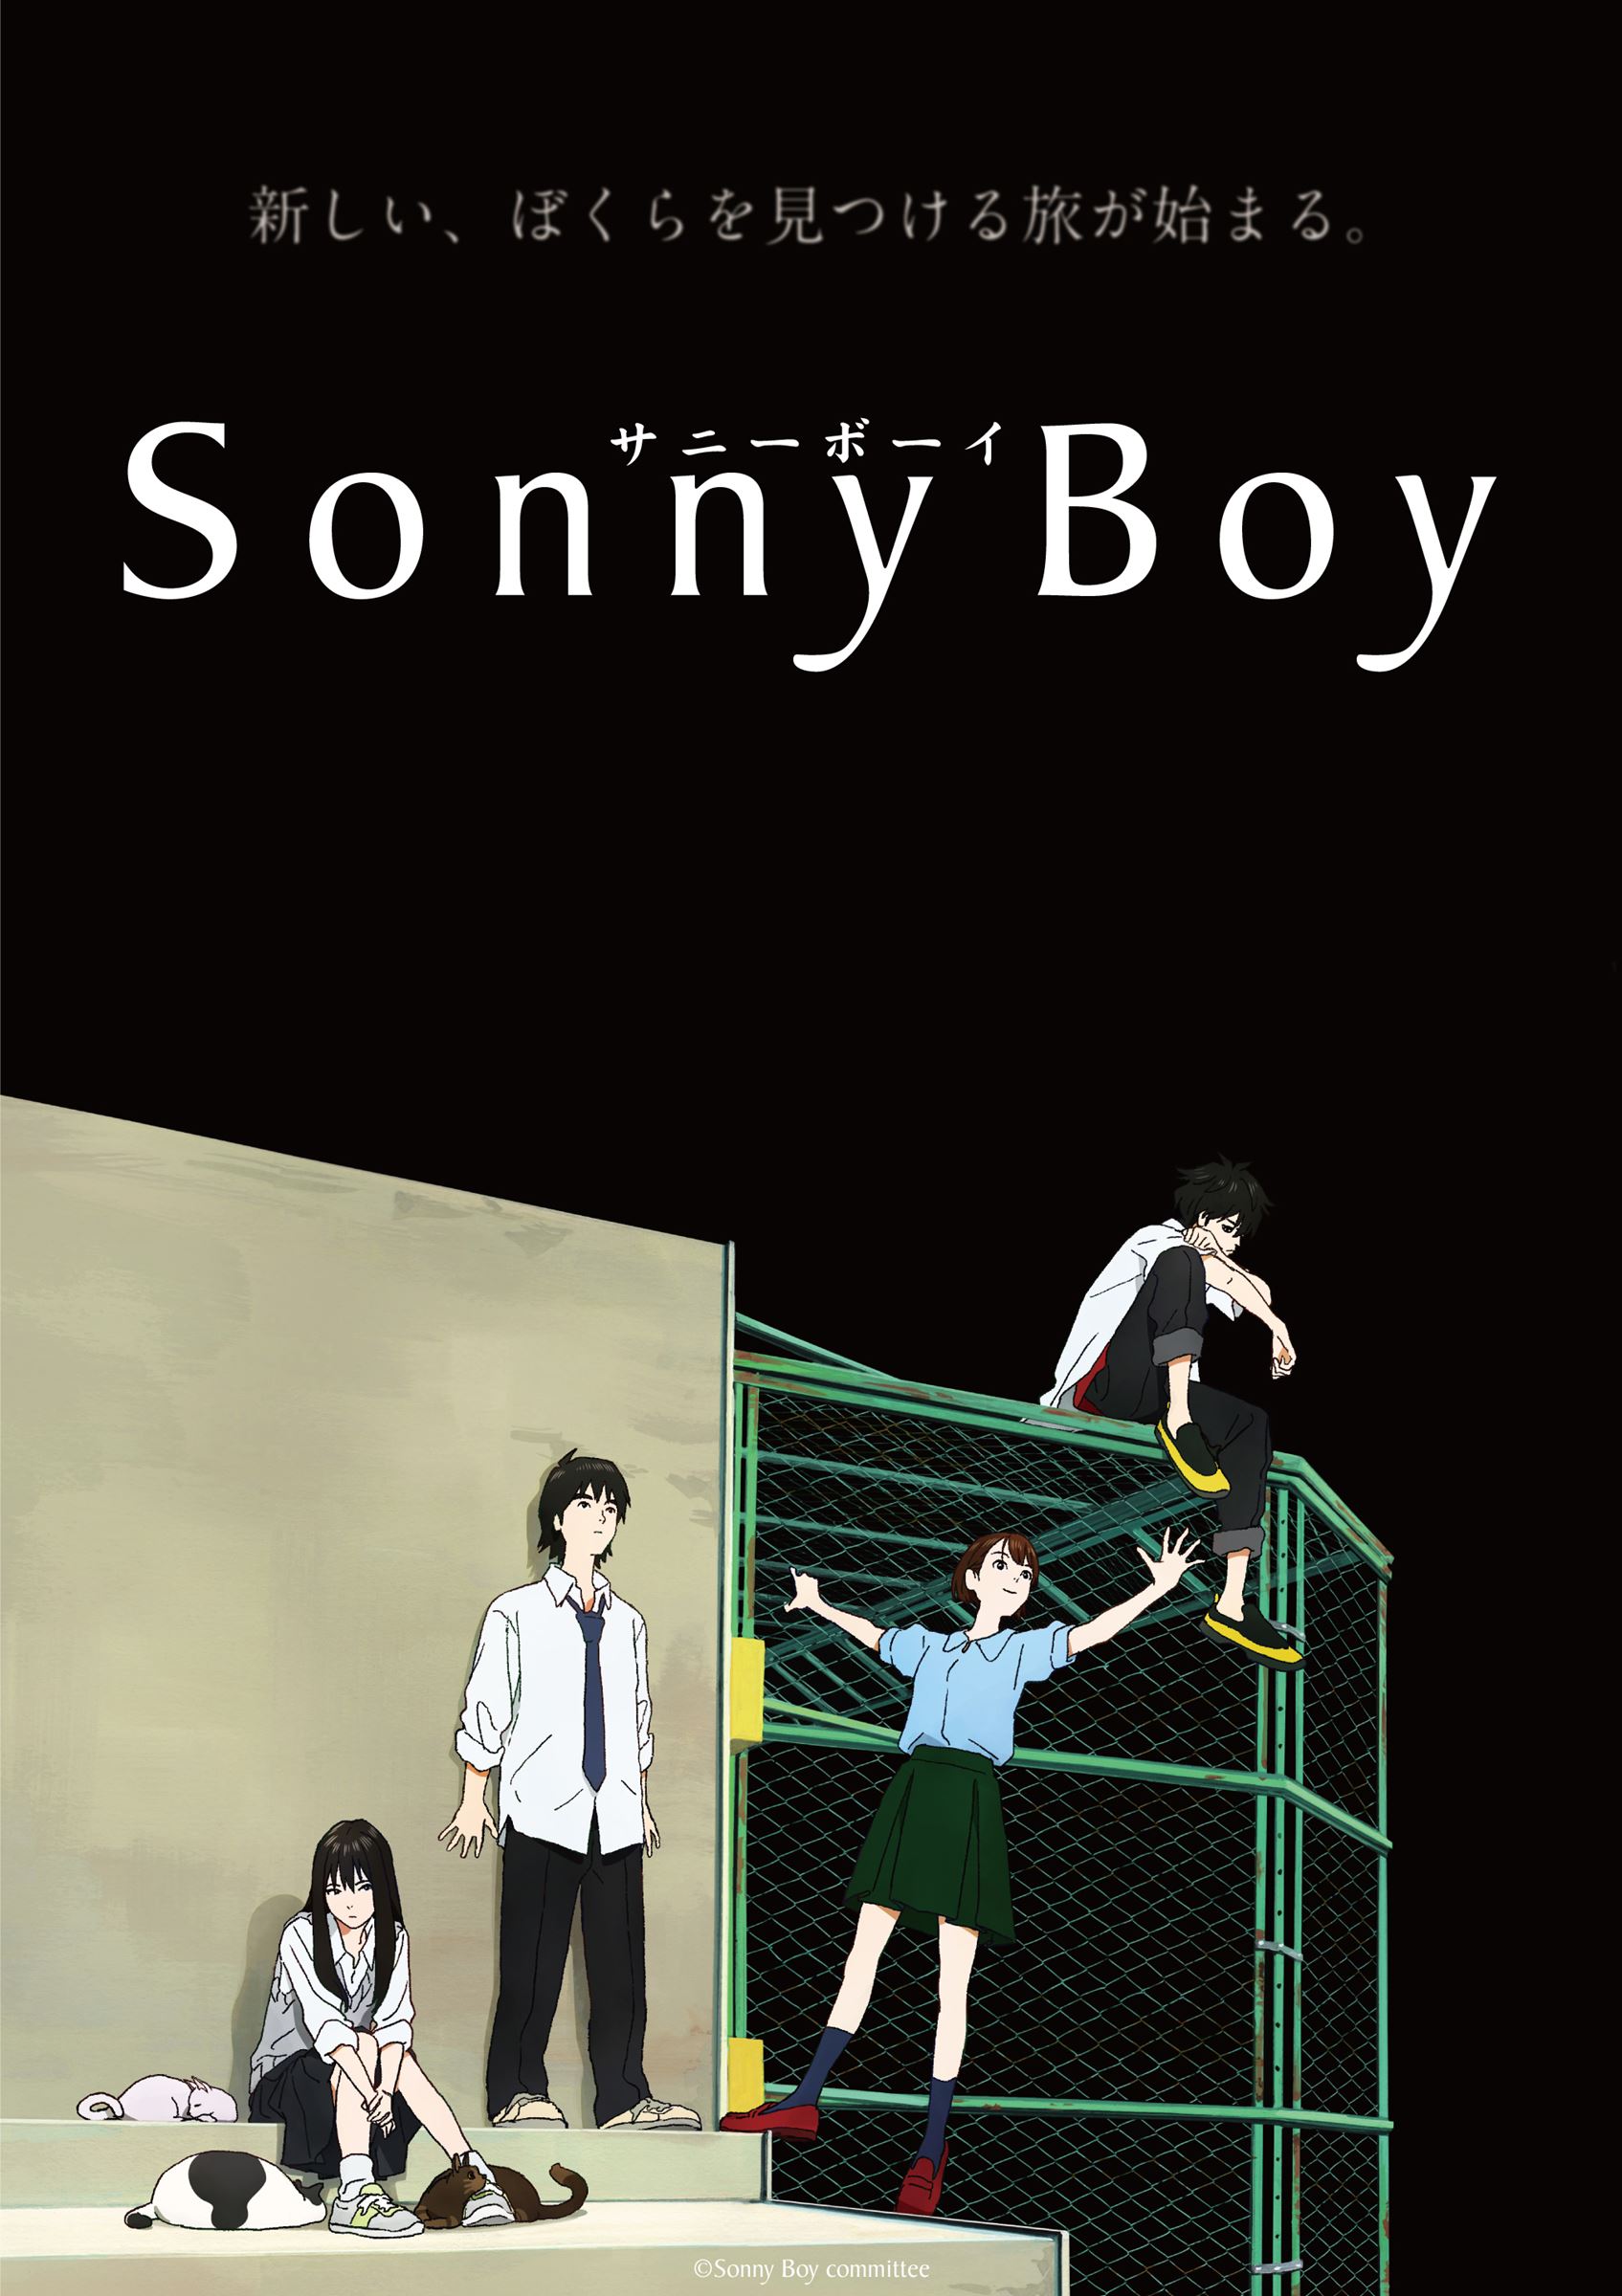 『Sonny Boy』 (c)Sonny Boy committee